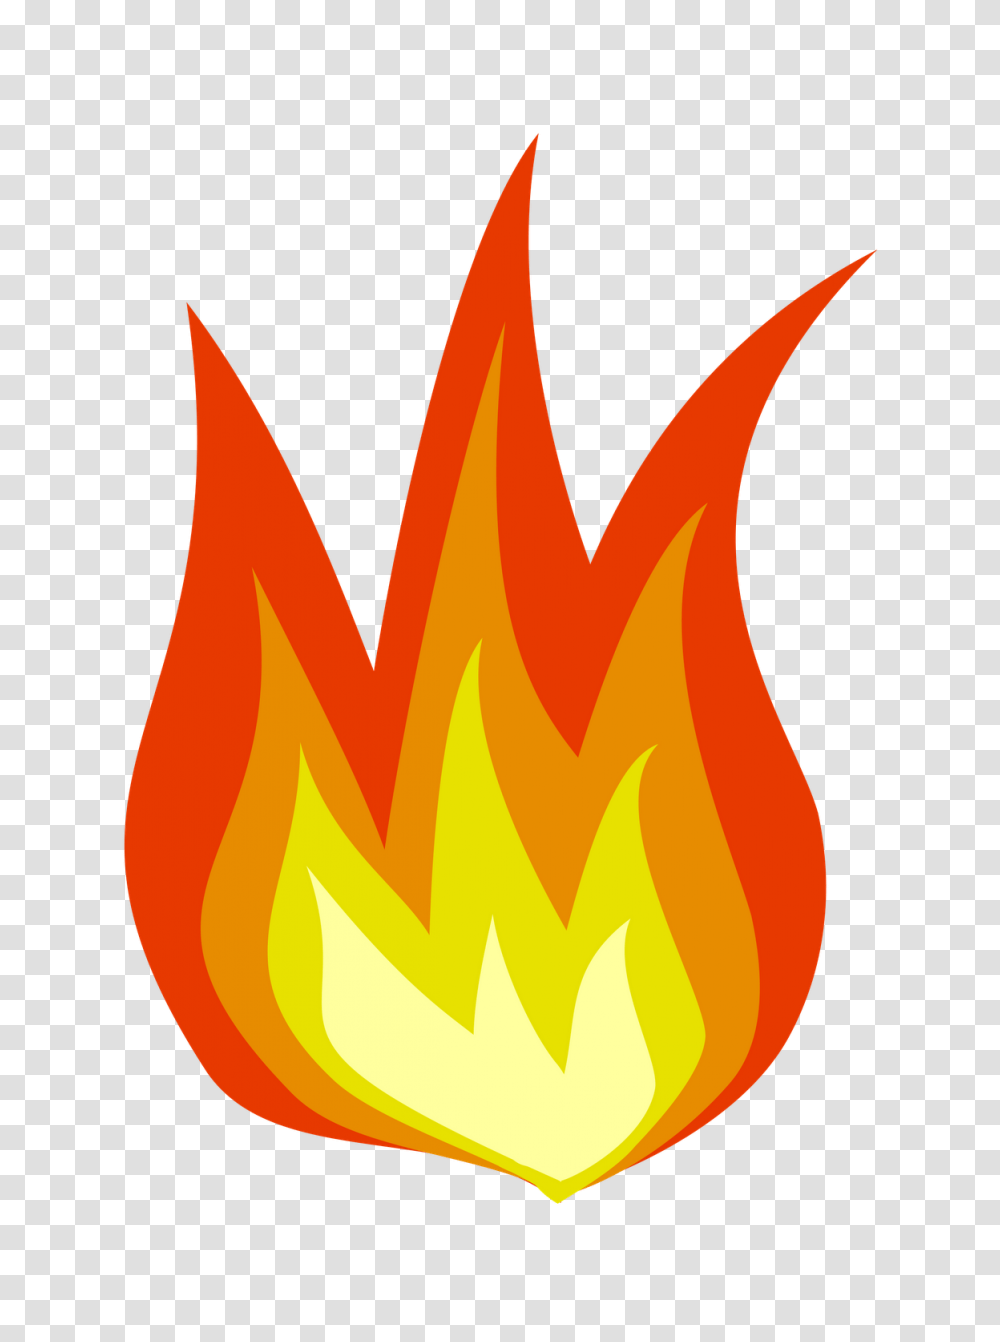 Dillingham Bristol Bay Under Burn Ban Kdlg, Fire, Flame, Bonfire Transparent Png